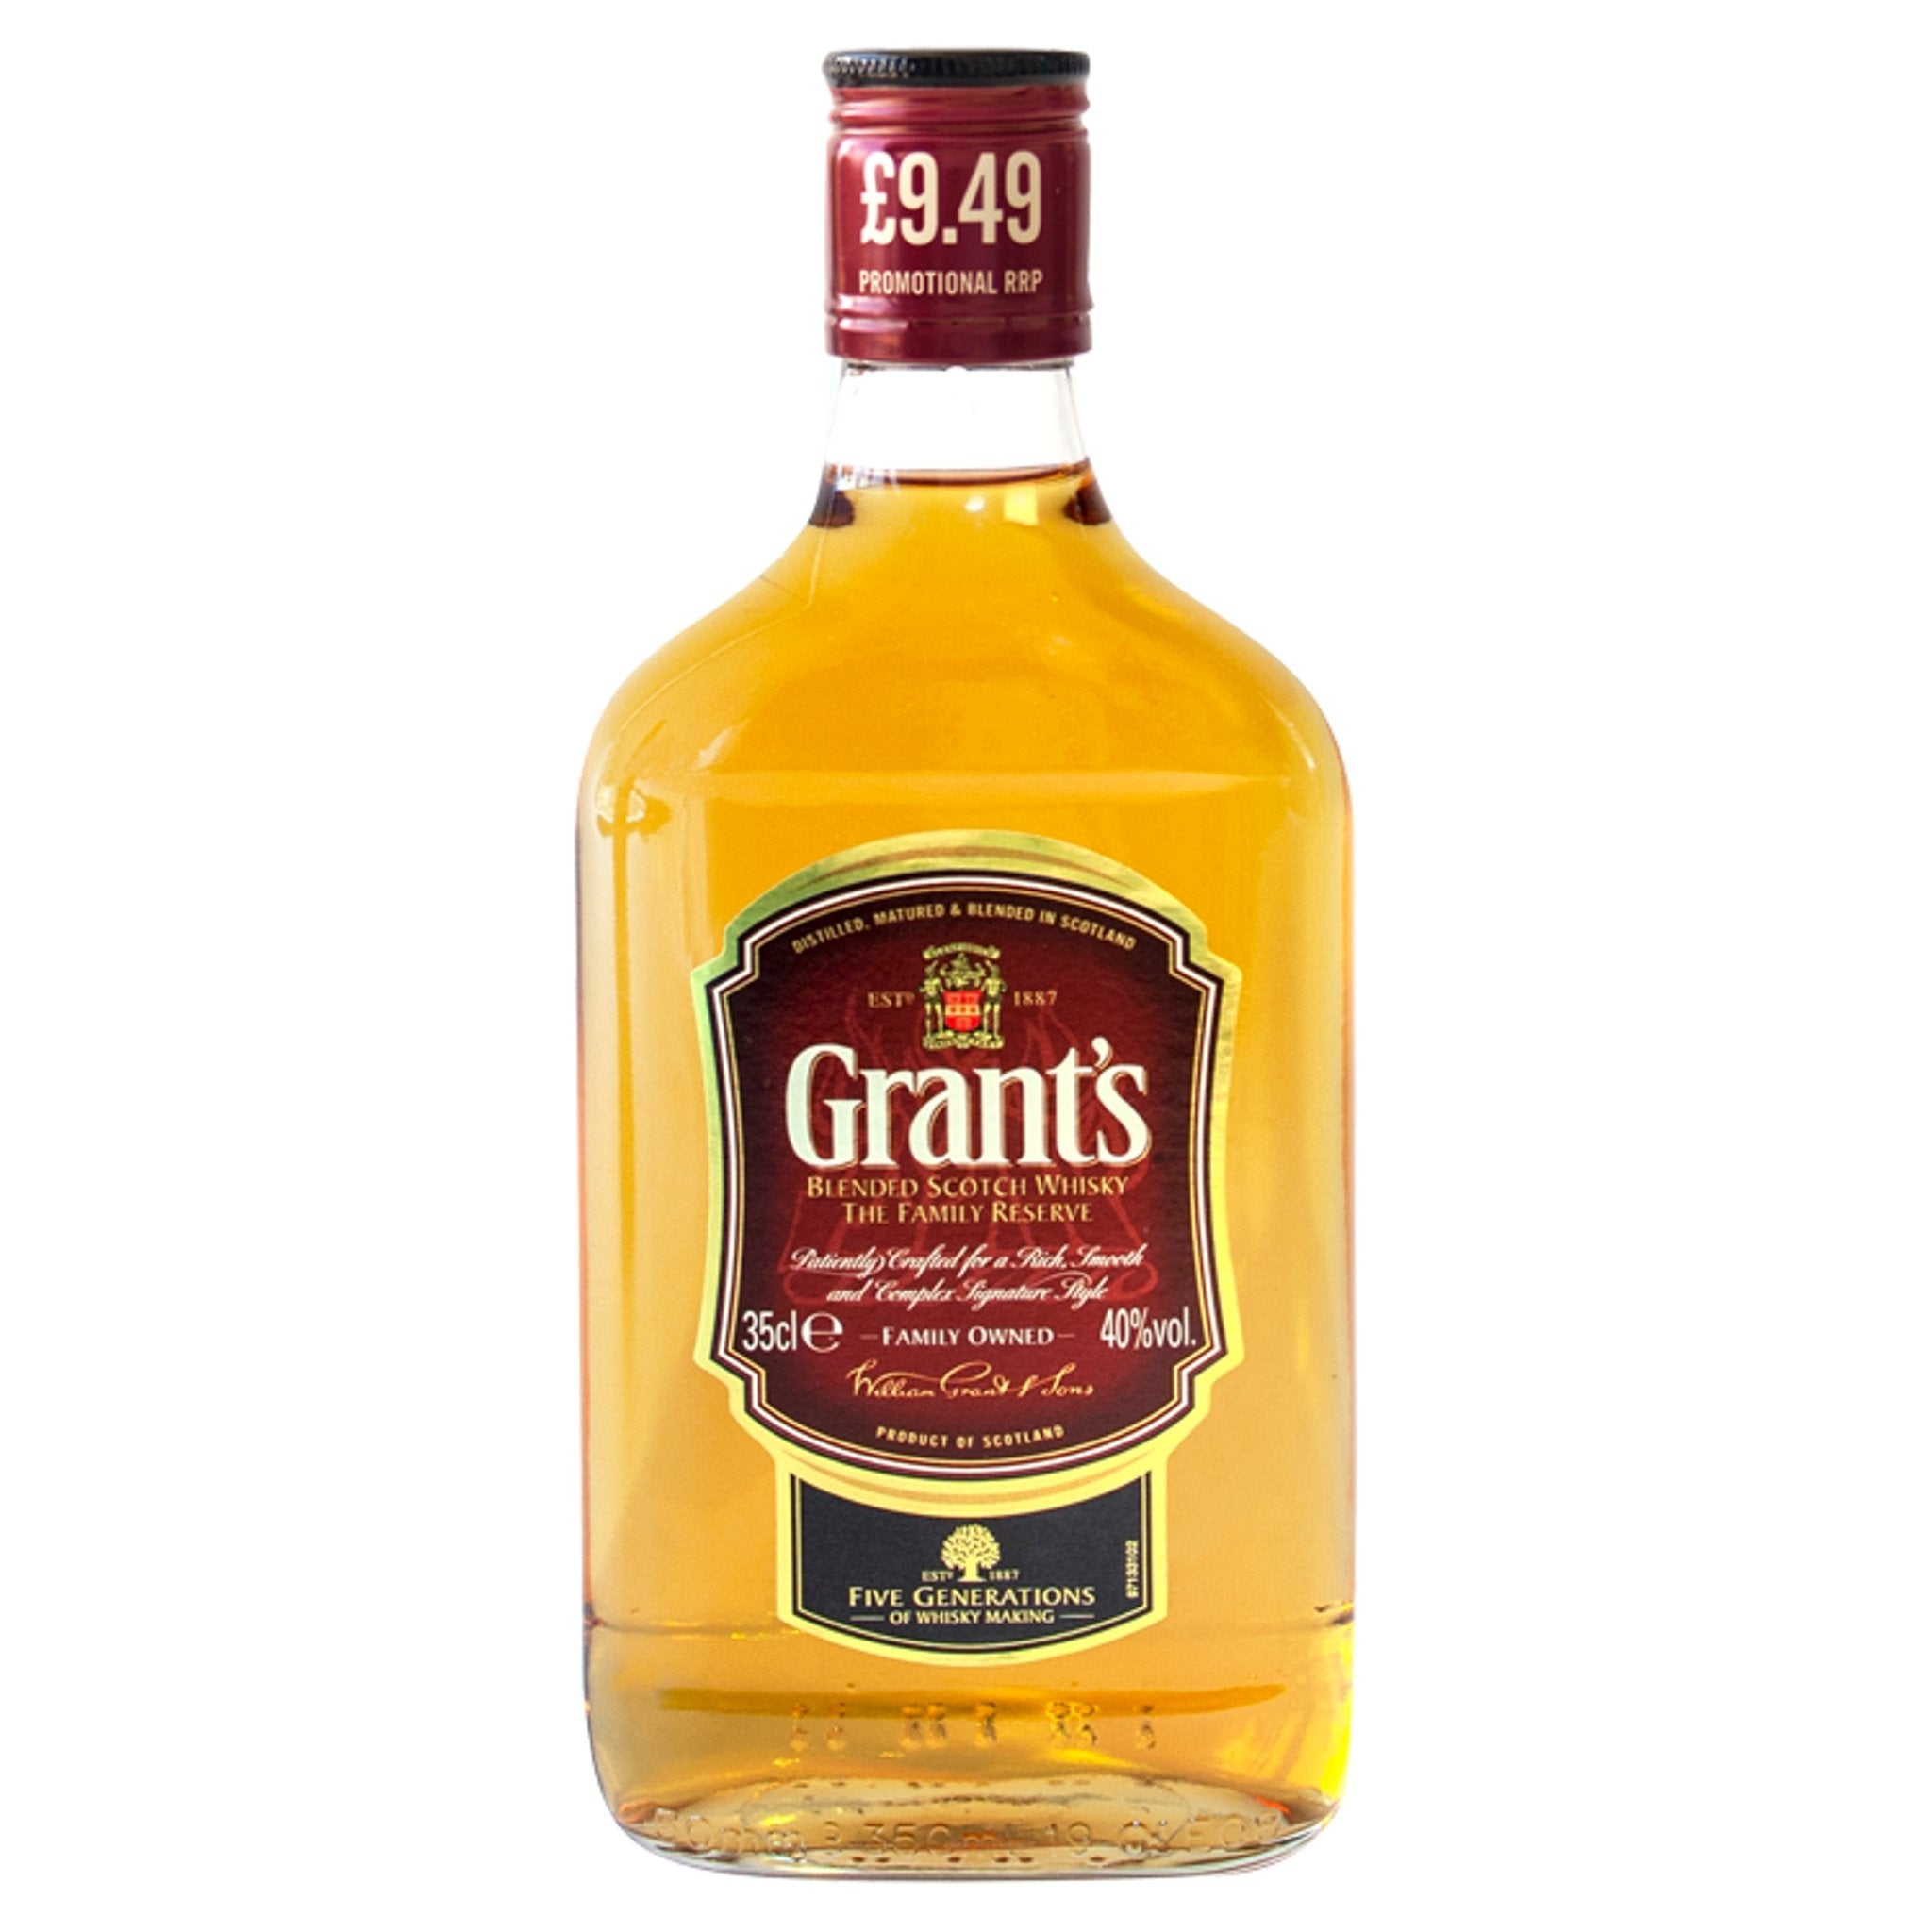 Grant's Blended Whisky – Fletcher